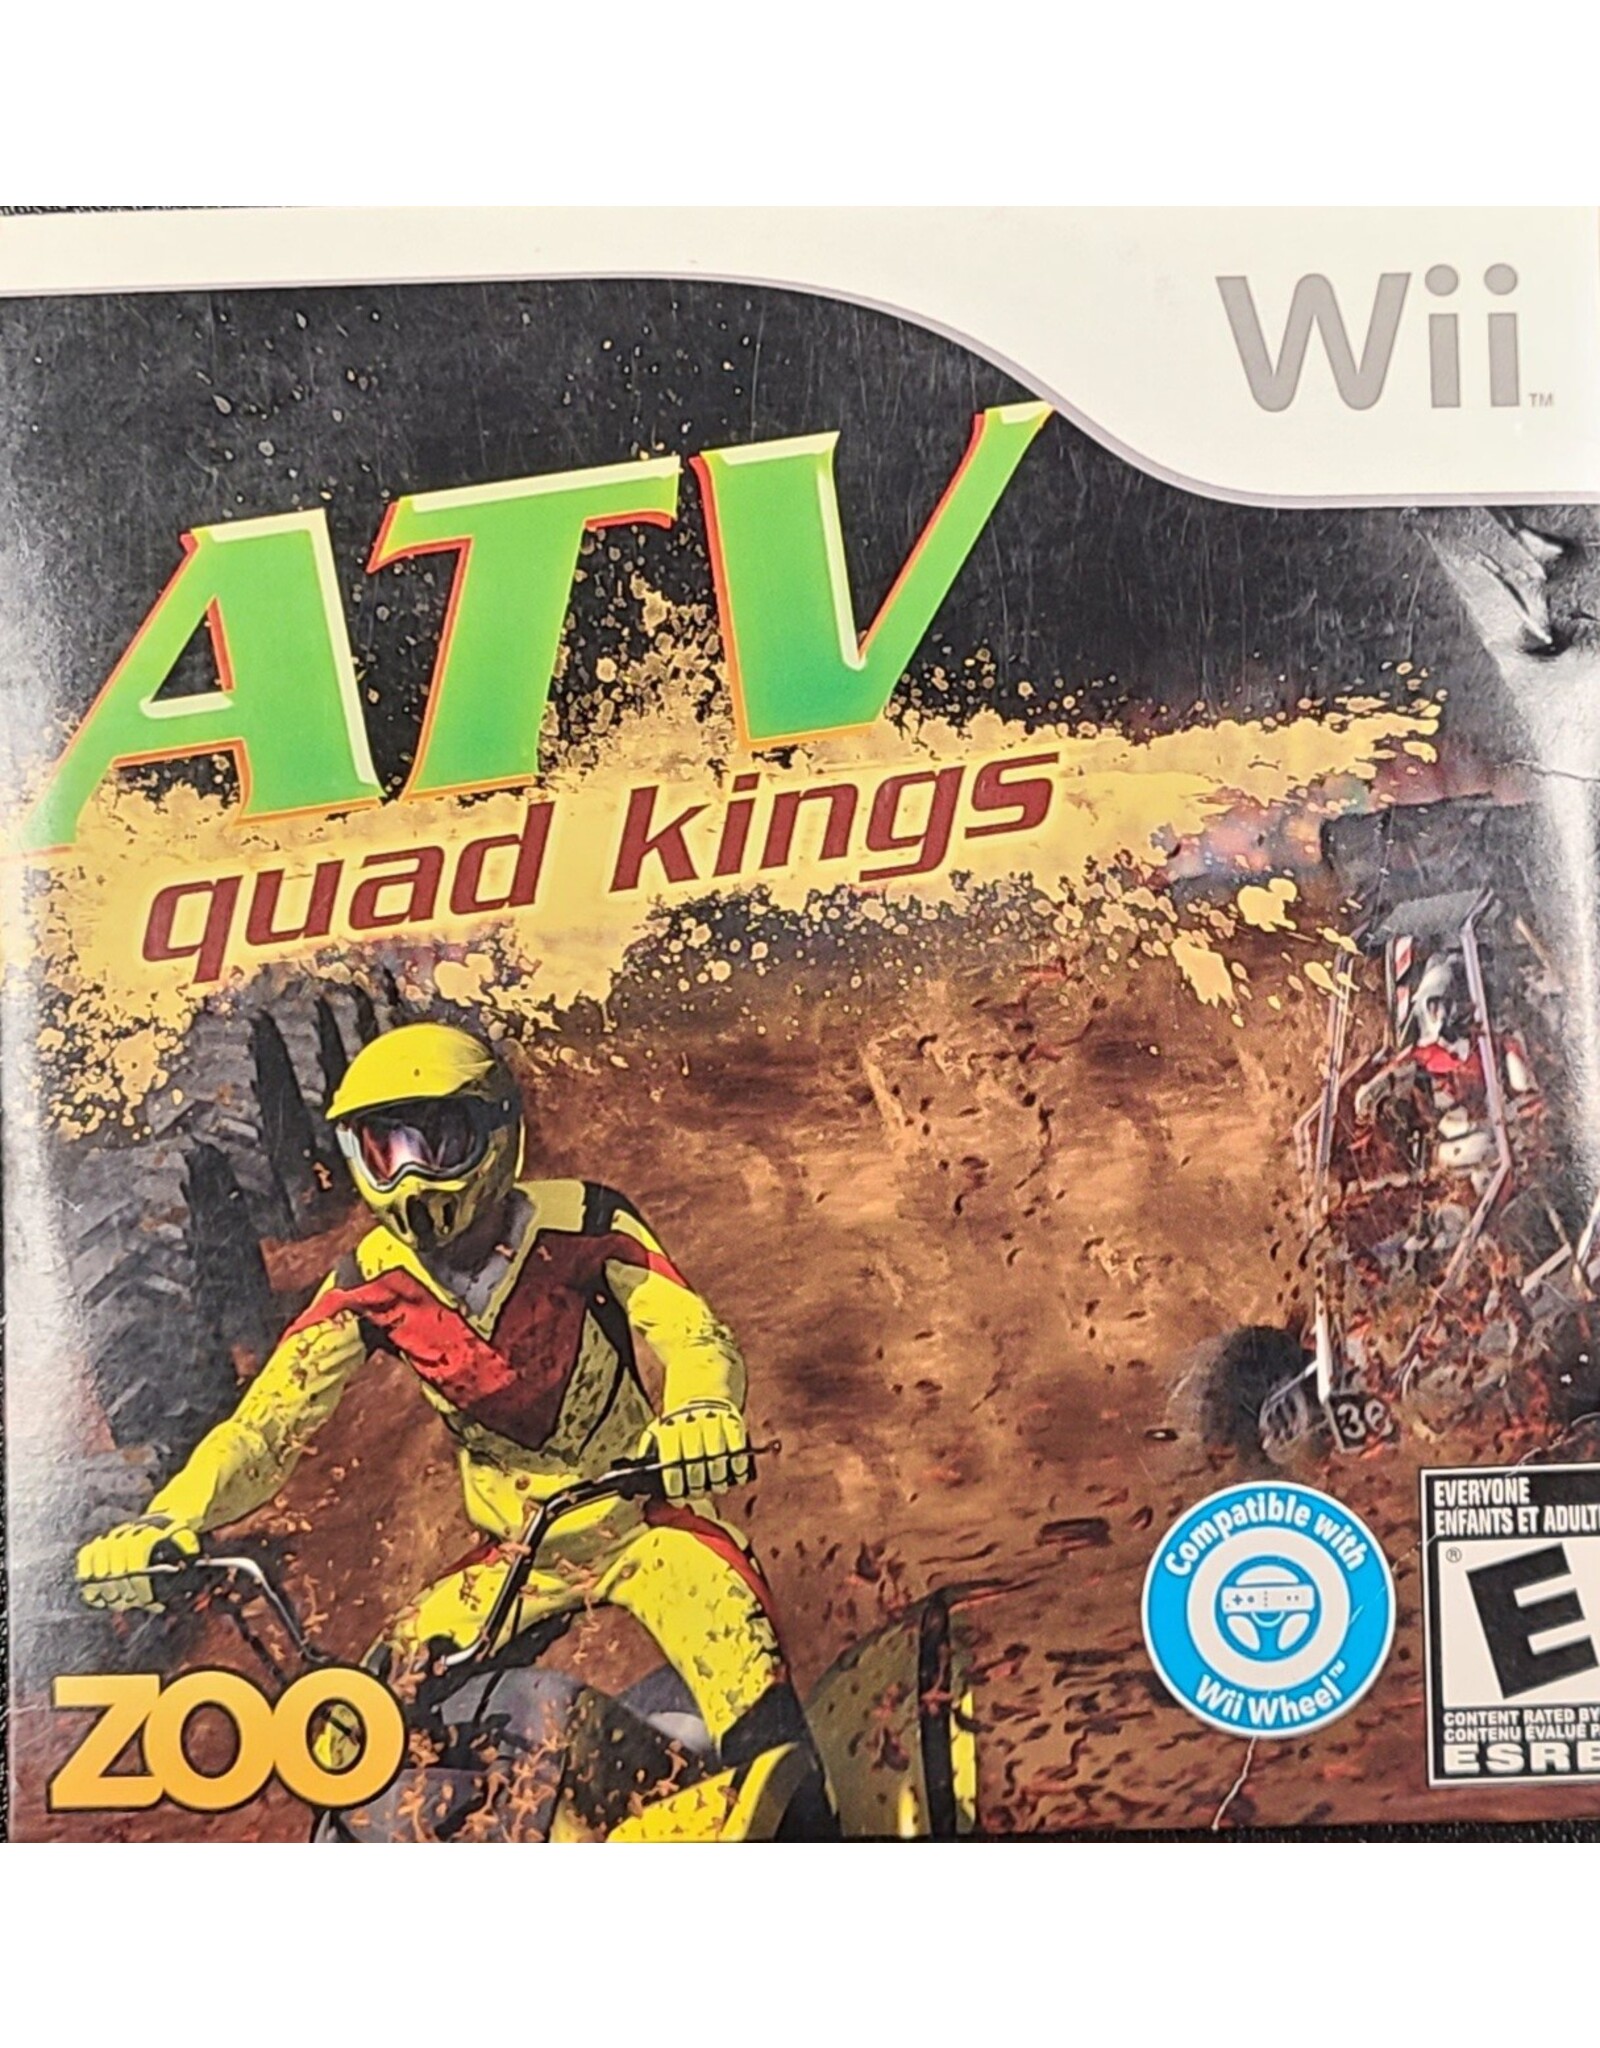 Wii ATV Quad Kings (Cardboard Sleeve, CiB)